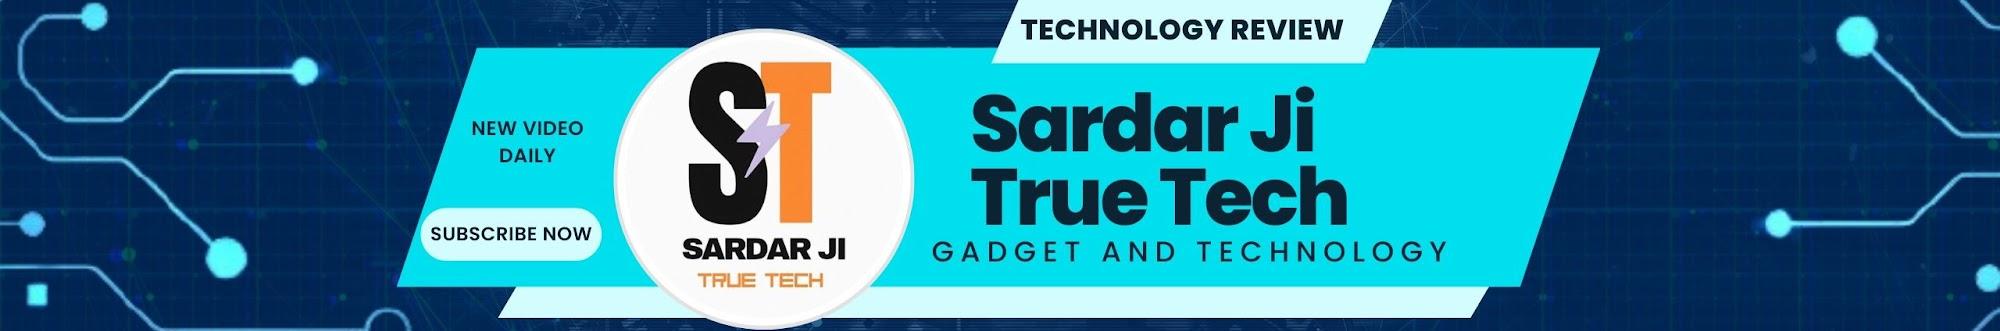 Sardar ji True Tech